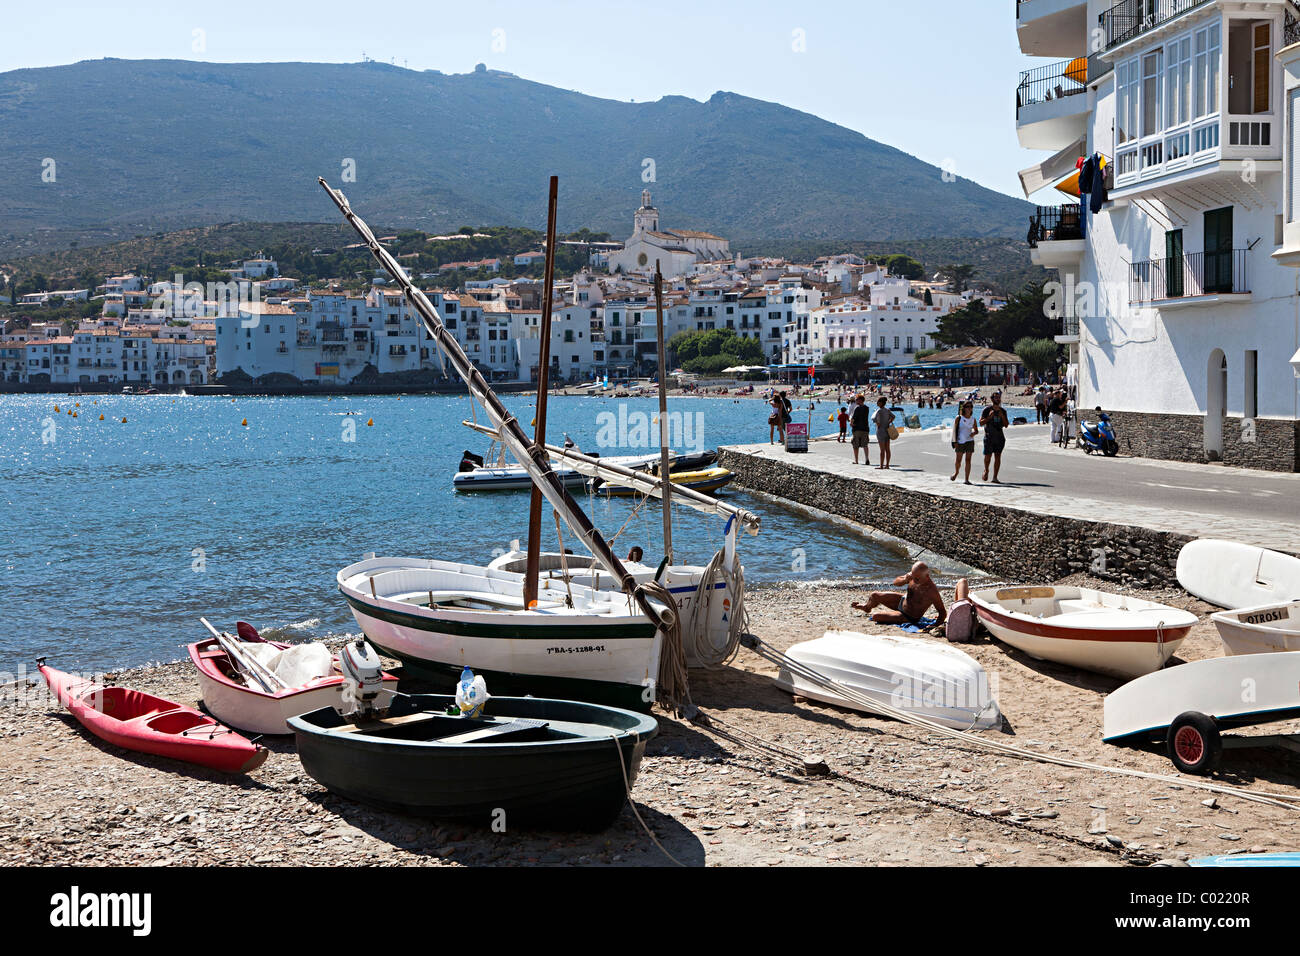 Bateaux sur la plage dans la ville de Cadaqués Emporda Catalogne Espagne Banque D'Images